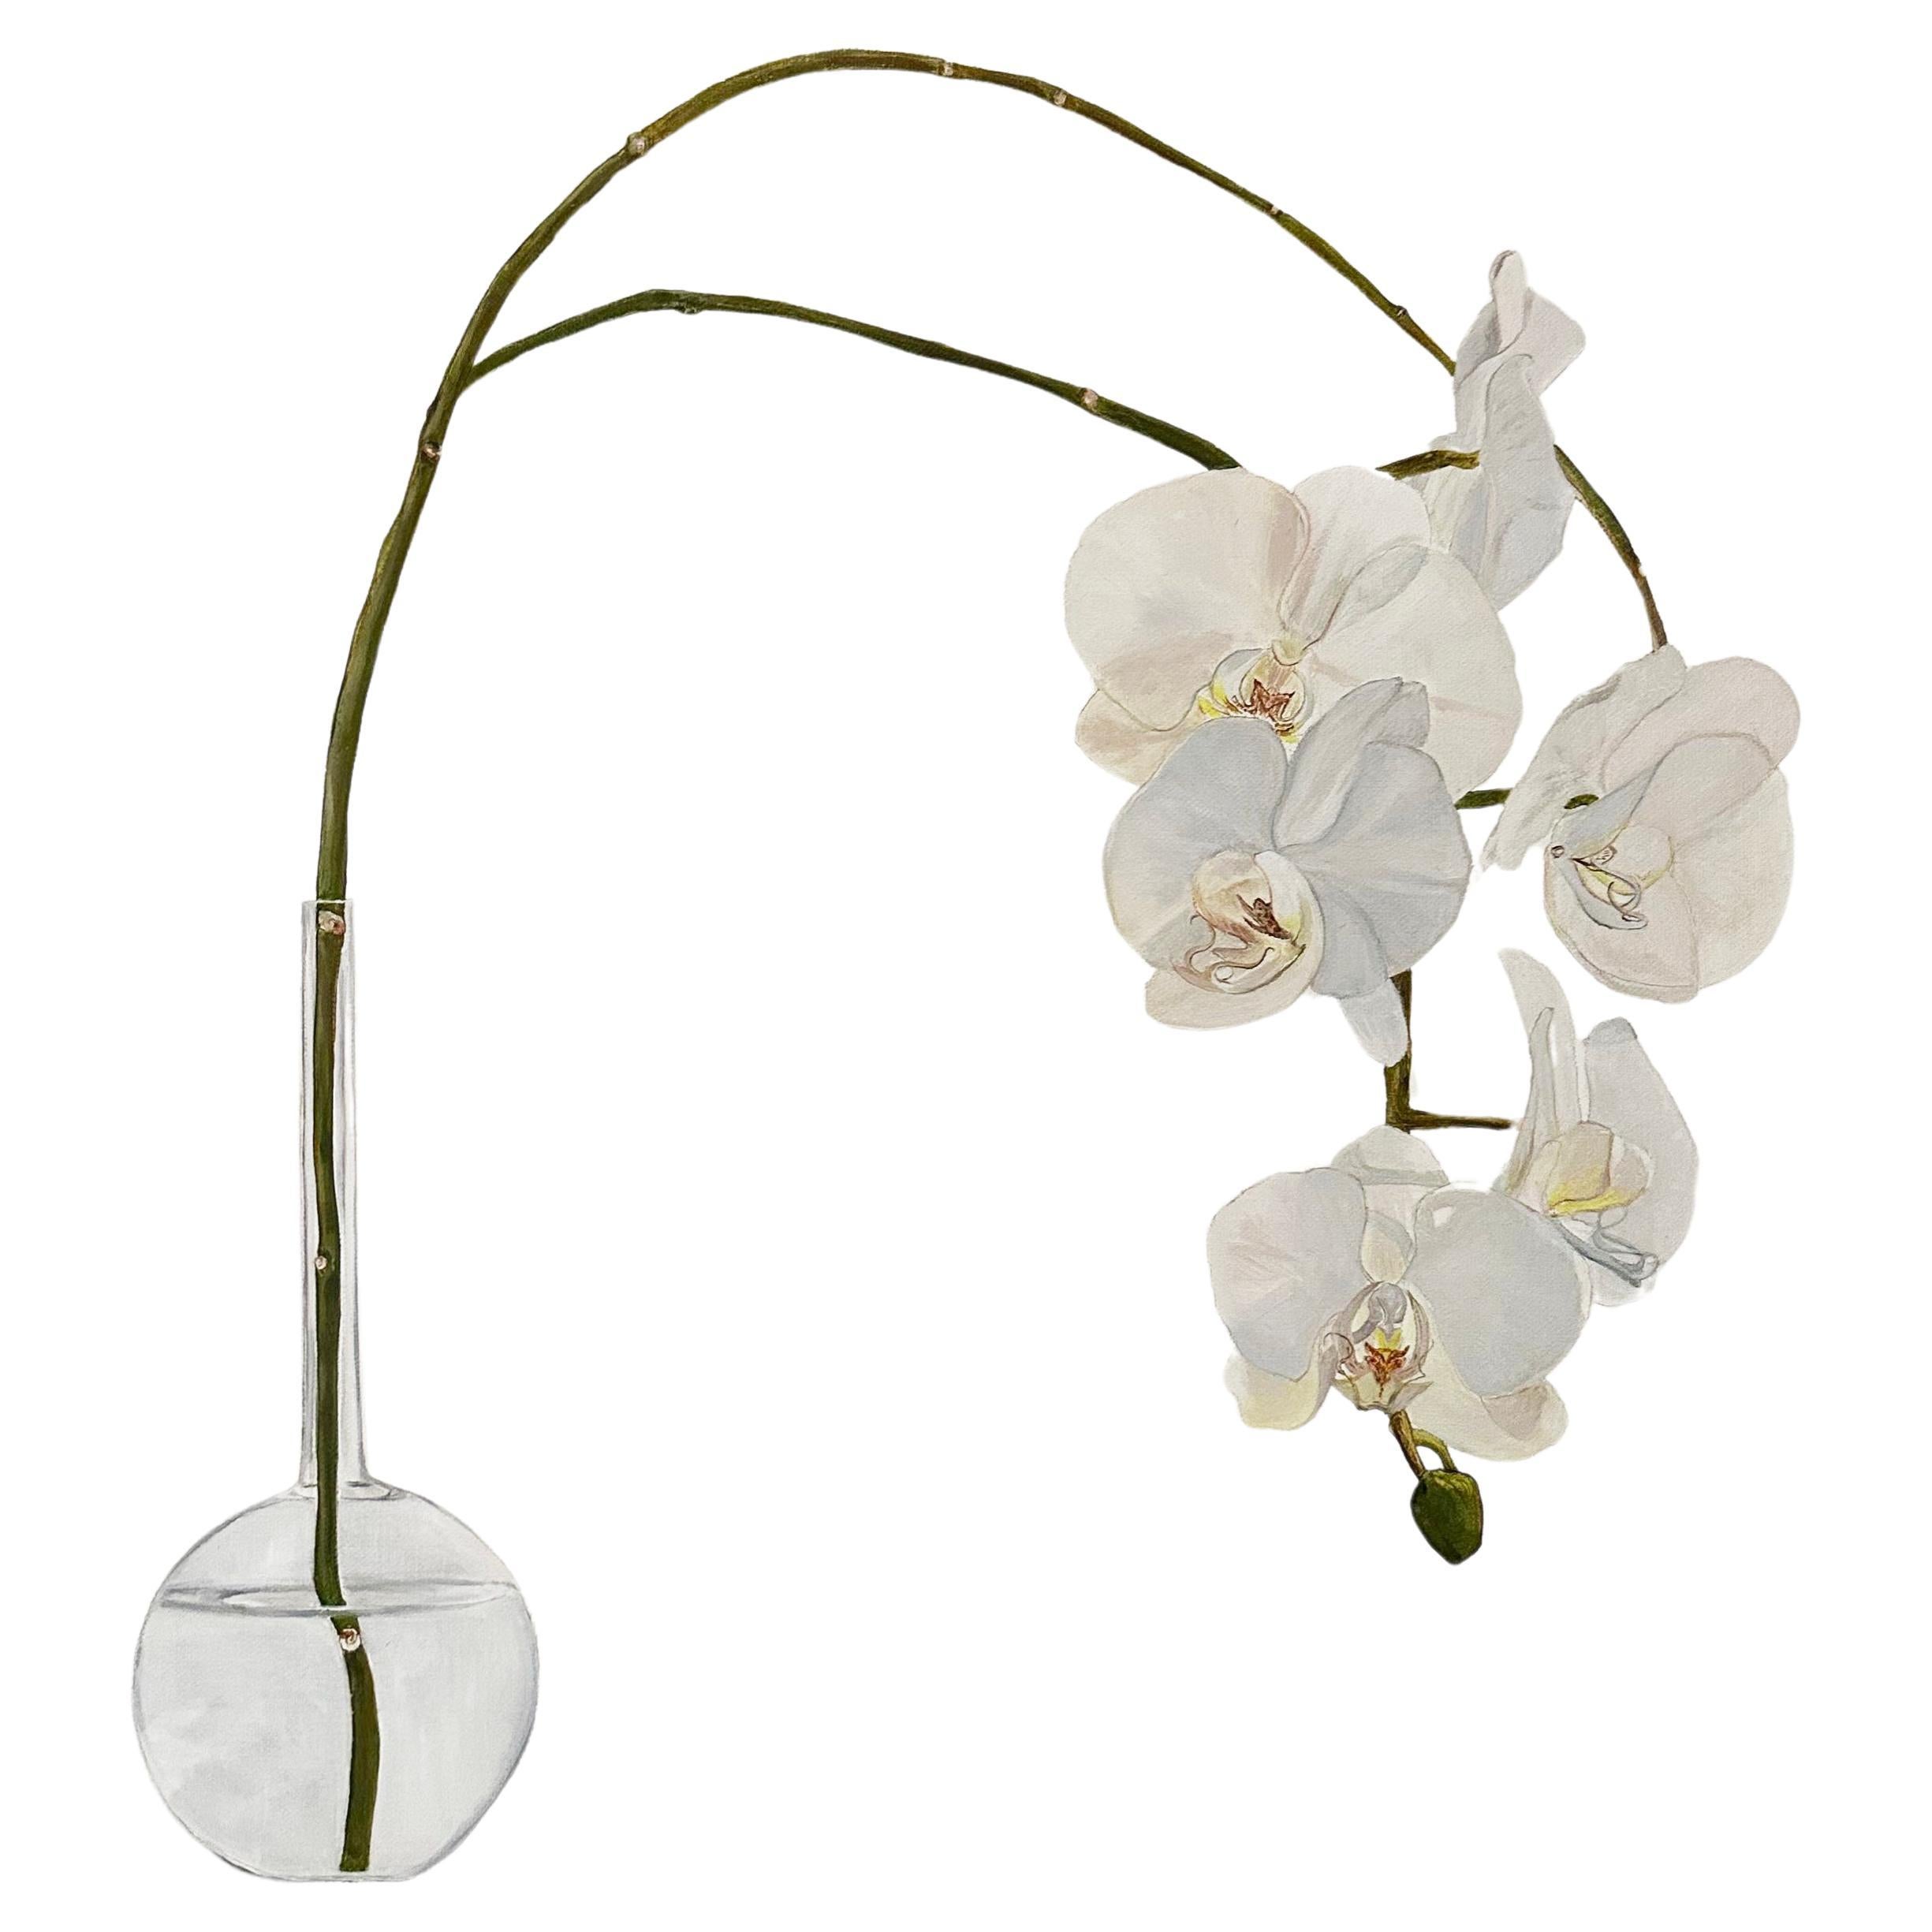 Original botanisches Ölgemälde von Tarn McLean.
Die Orchideenblüte ist zart, exotisch und anmutig. Dieses Gemälde spiegelt eine neutrale Farbpalette wider, die ruhig und friedlich ist, mit einer reduzierten Komposition, die beidseitig ausgeglichen